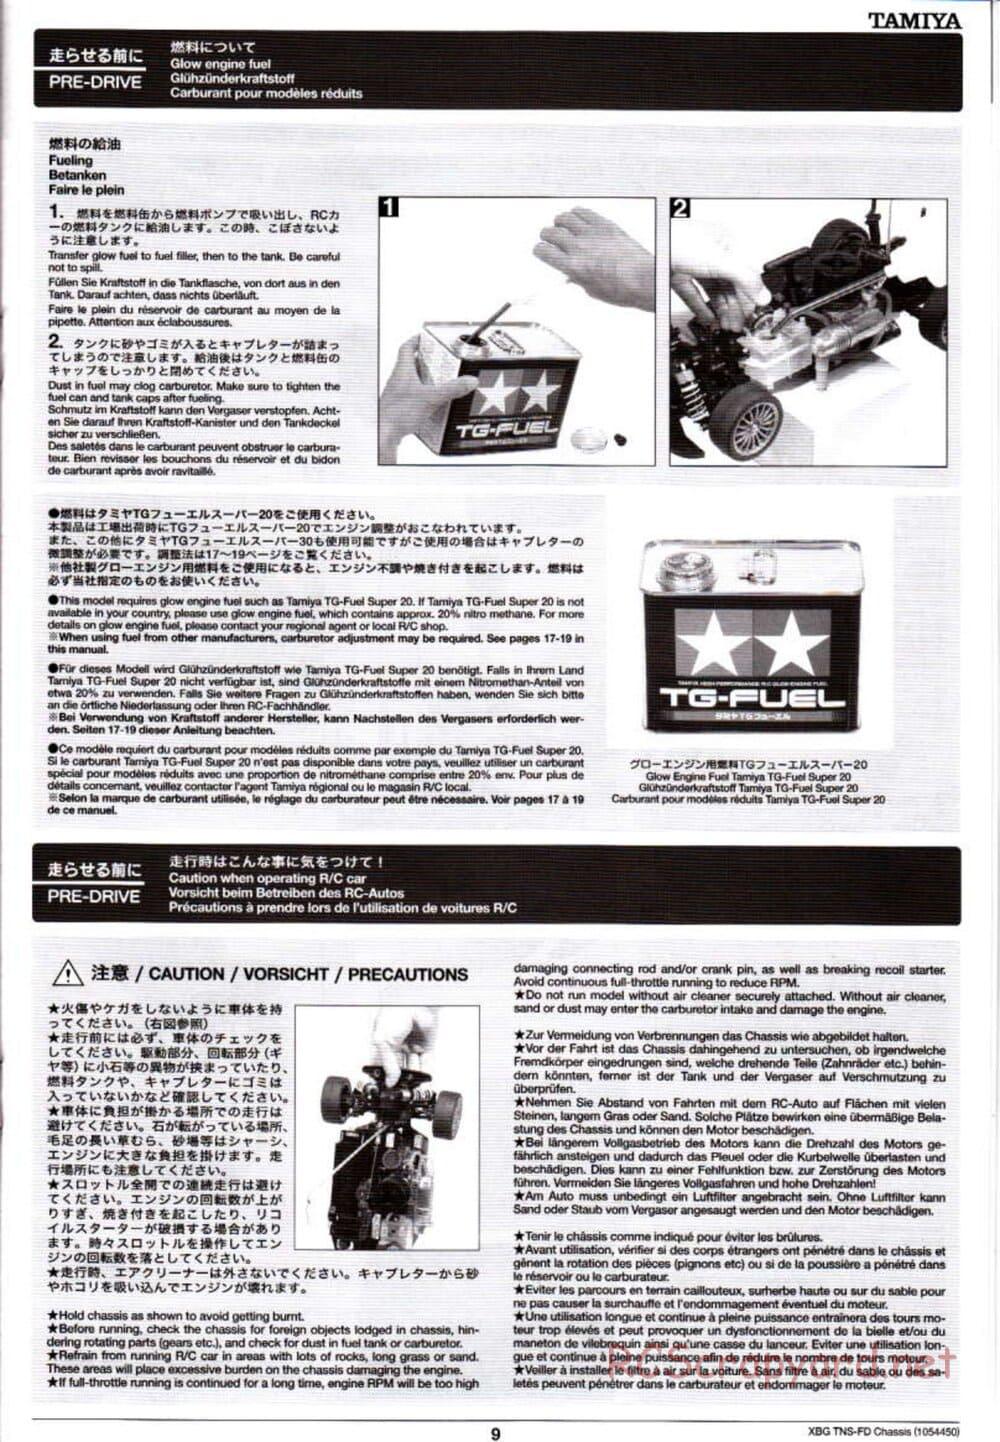 Tamiya - TNS-FD Chassis - Manual - Page 9